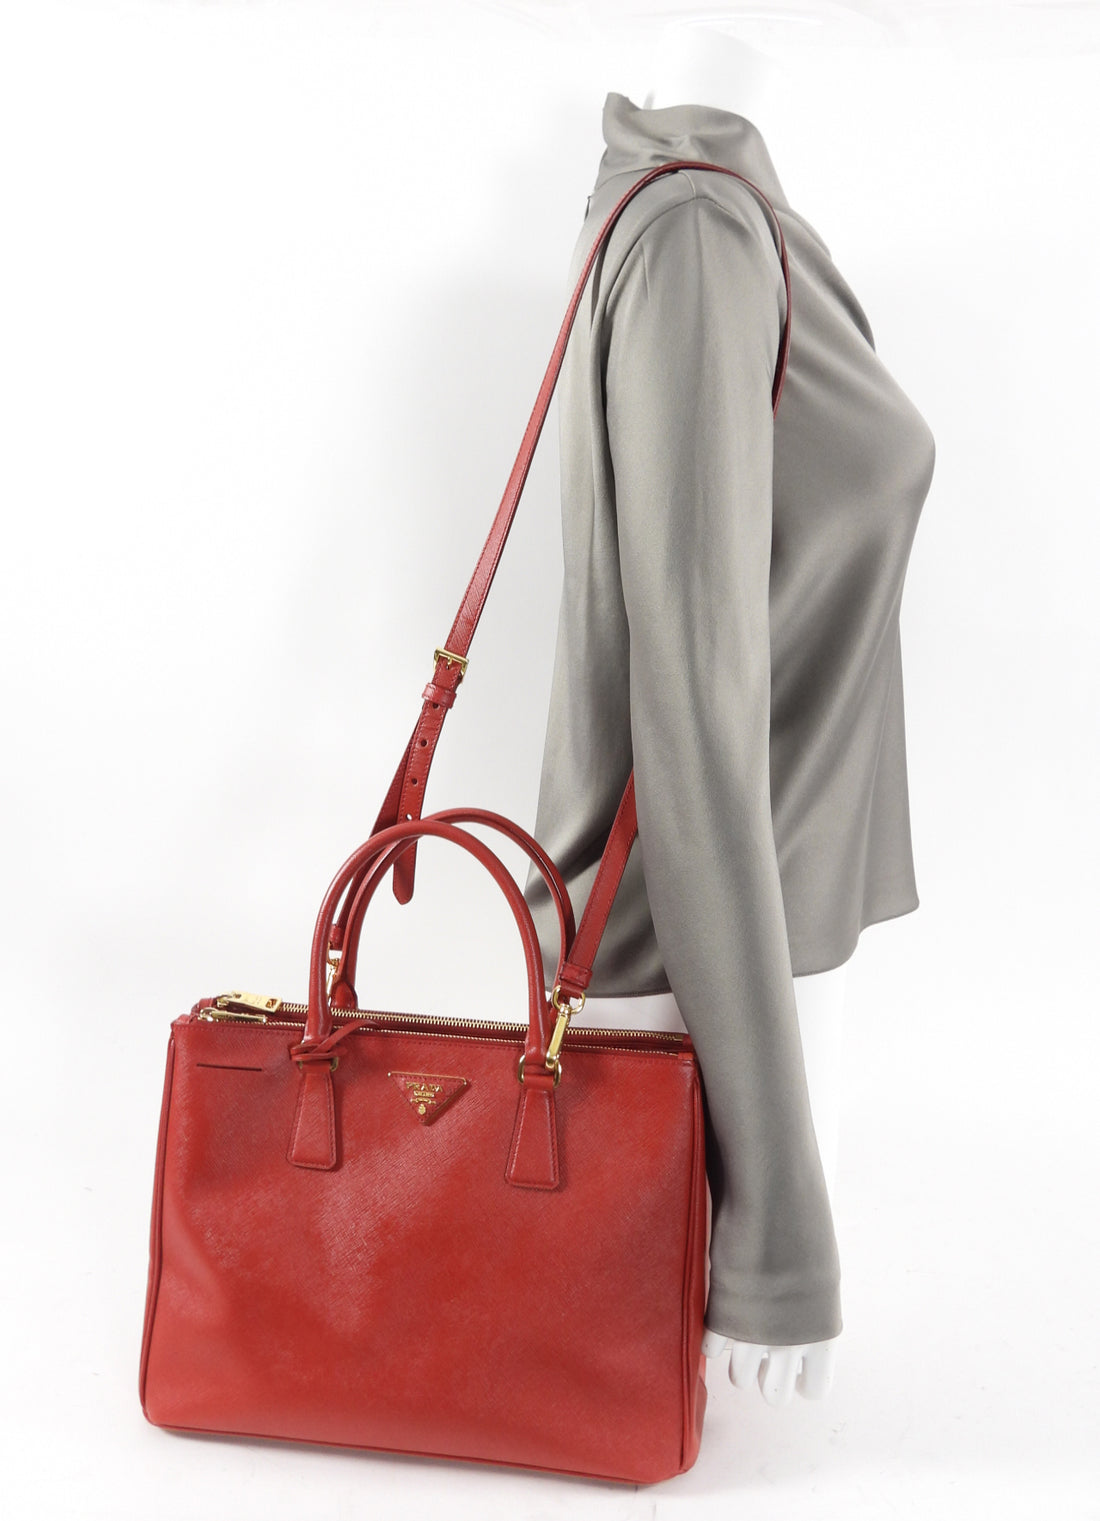 Prada Red Medium Galleria Double Zip Tote Bag